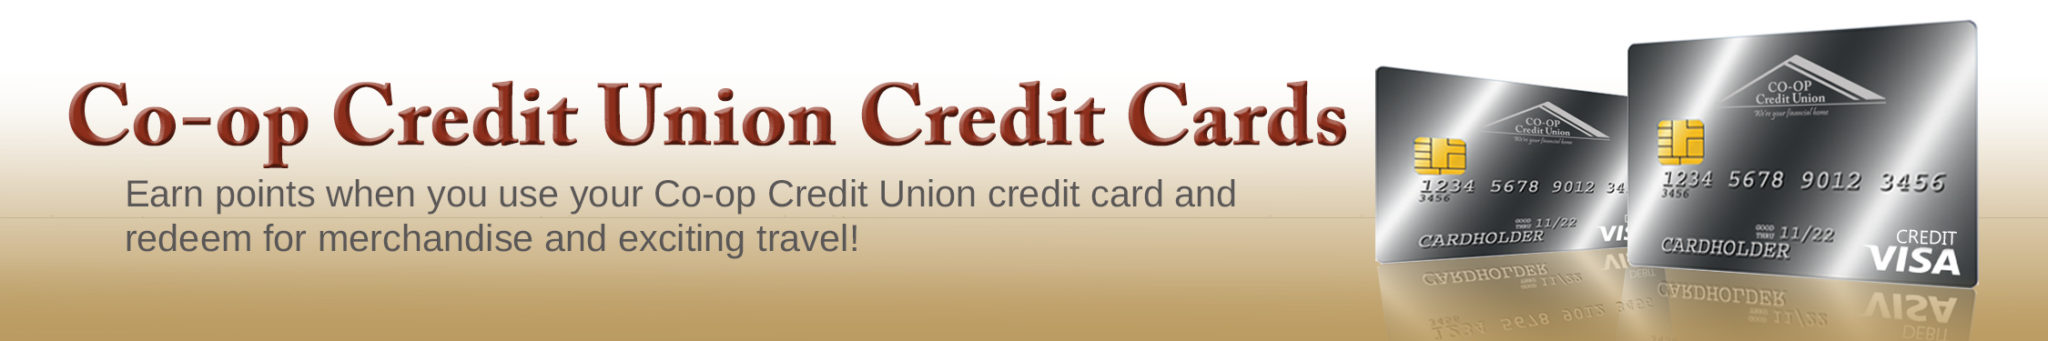 co op credit card online